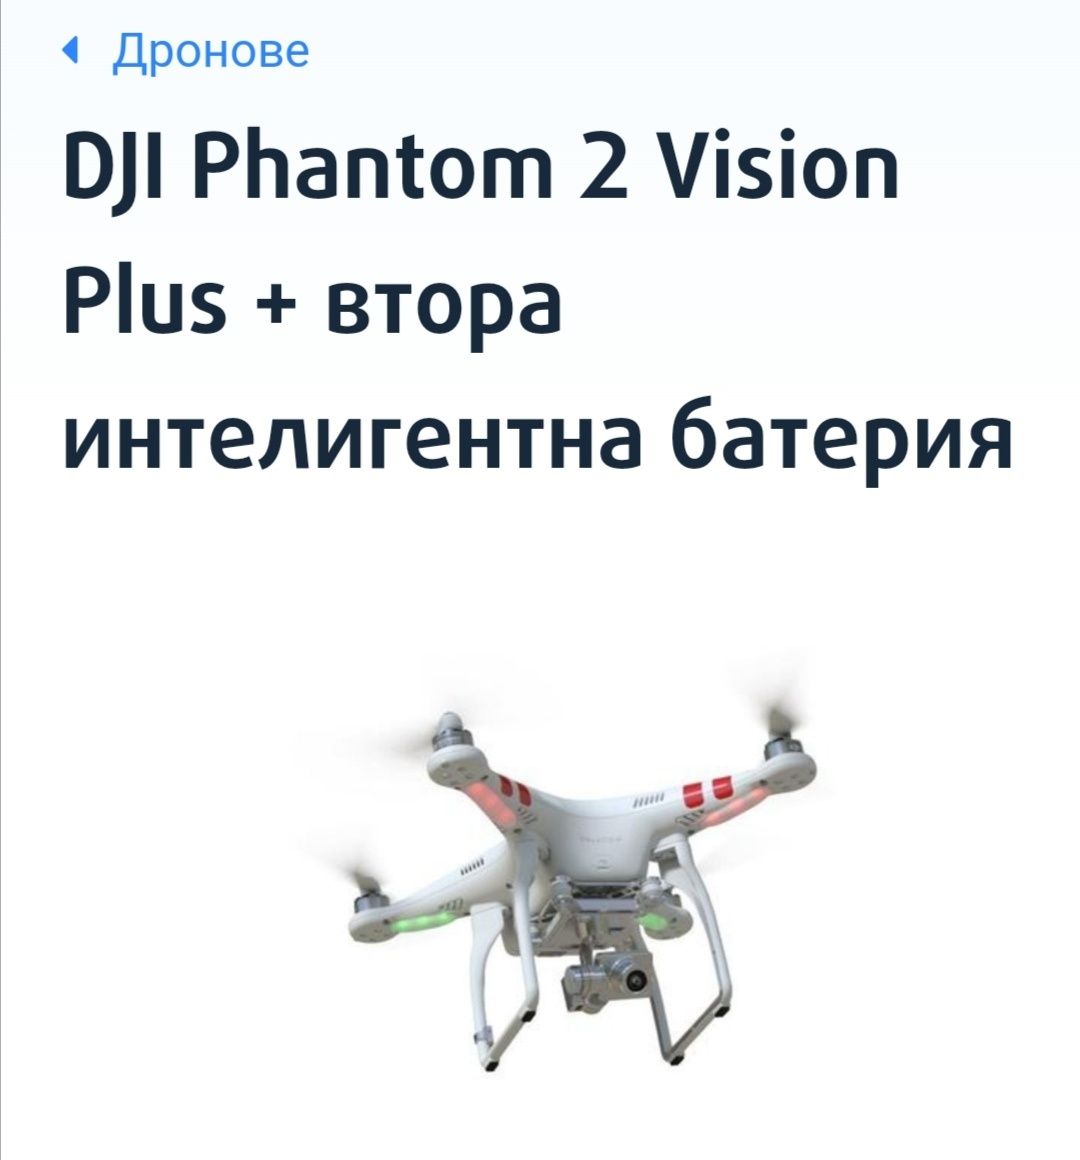 DJI Phantom 2 Vision - DRON